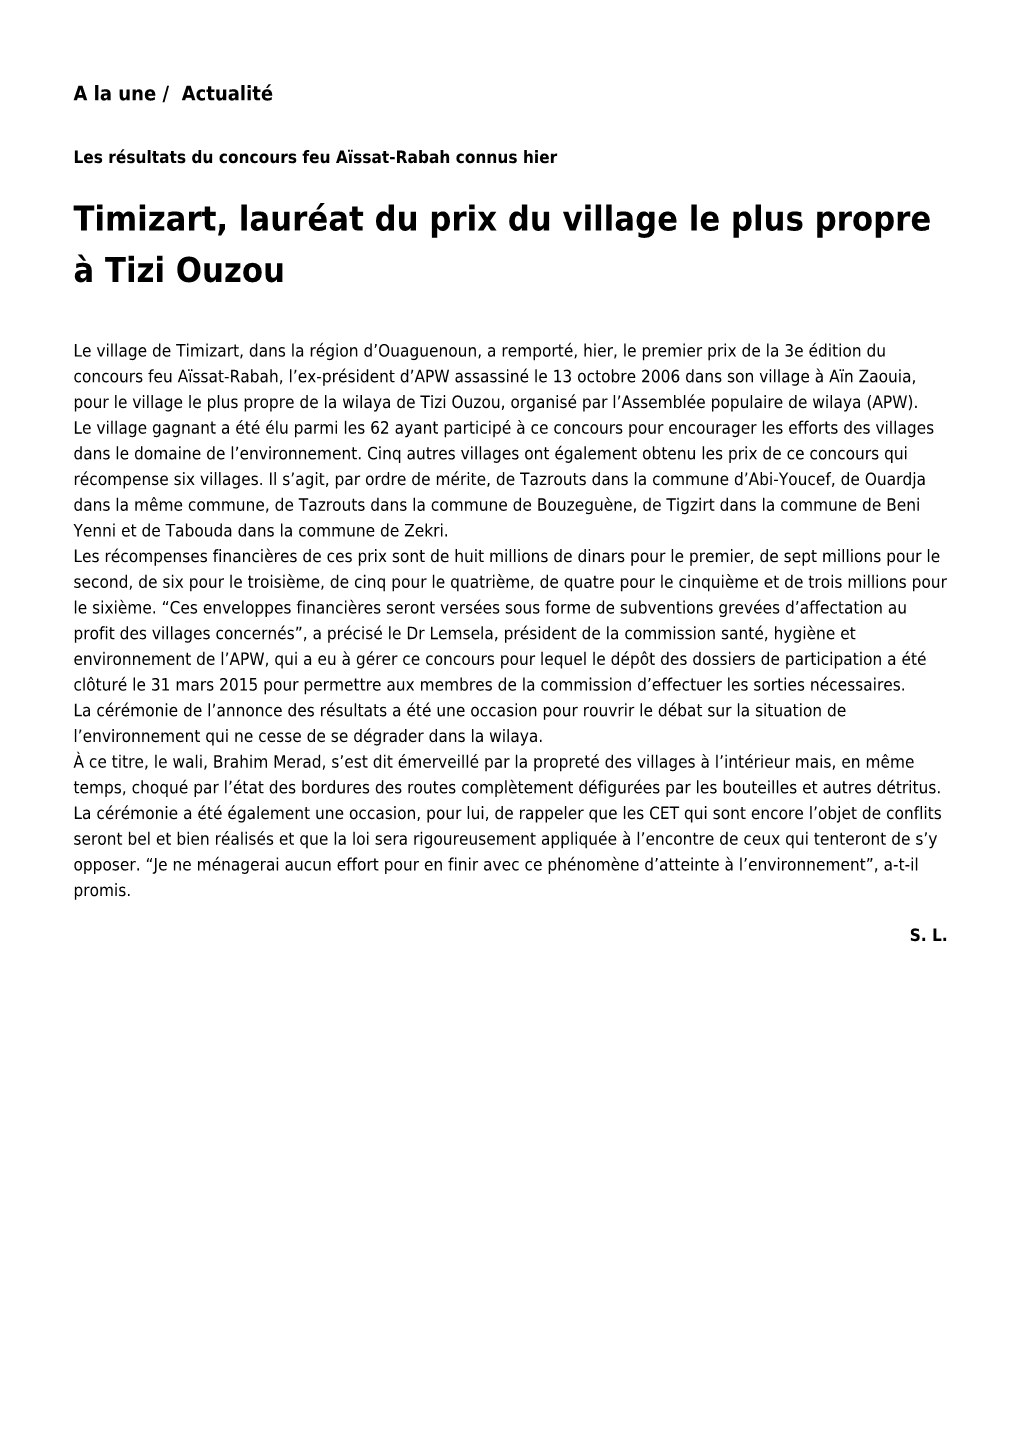 Timizart, Lauréat Du Prix Du Village Le Plus Propre À Tizi Ouzou